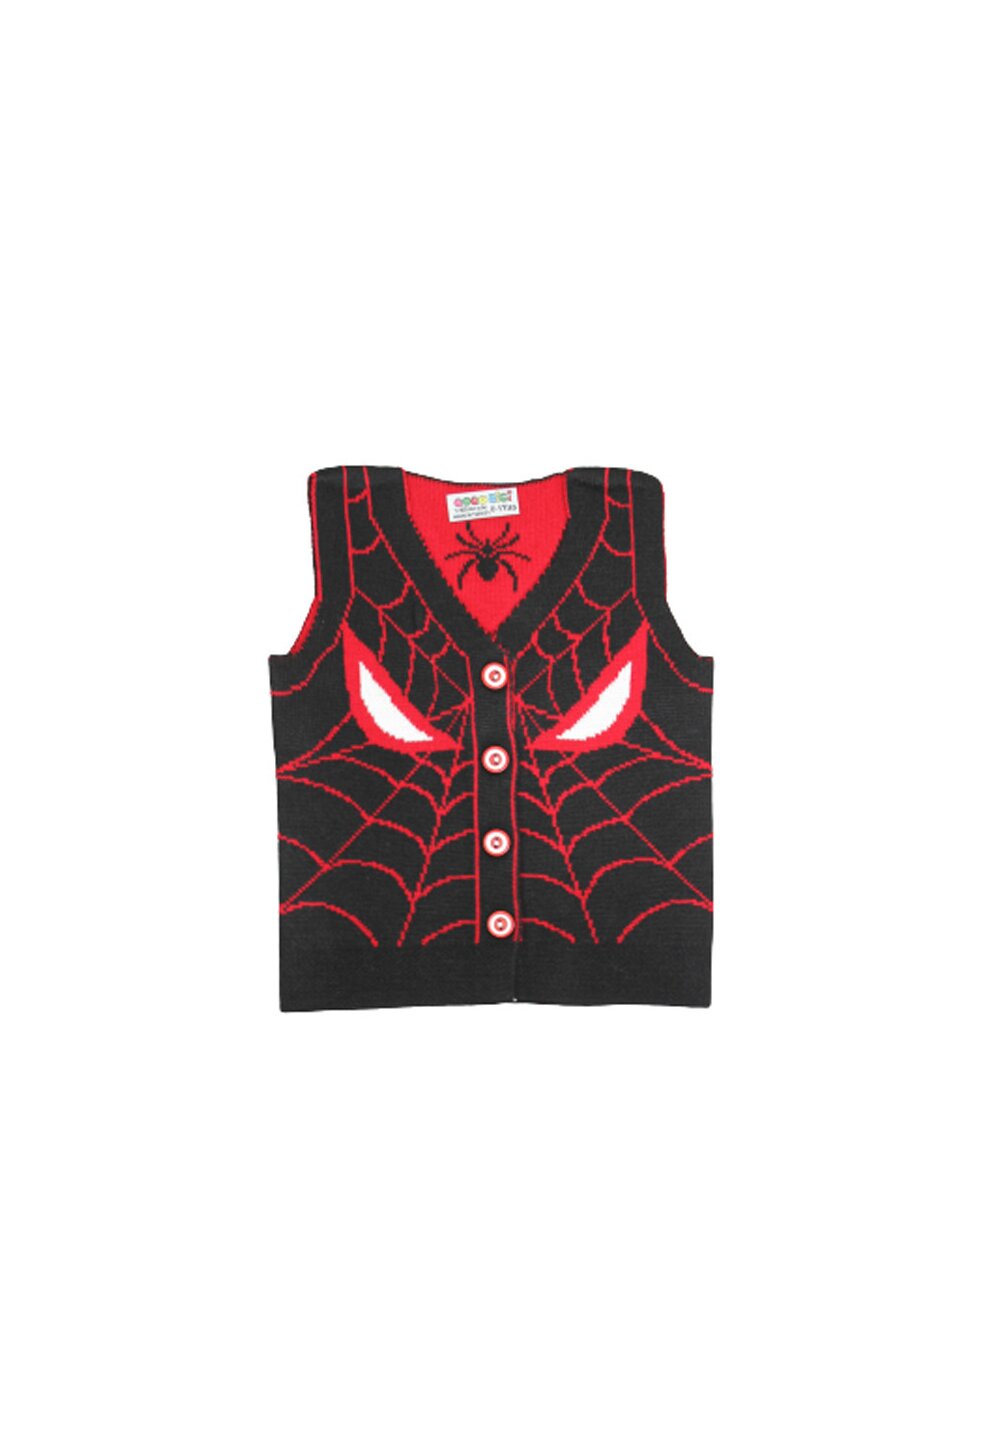 Vesta tricotata, Spider Man, negru cu rosu Prichindel